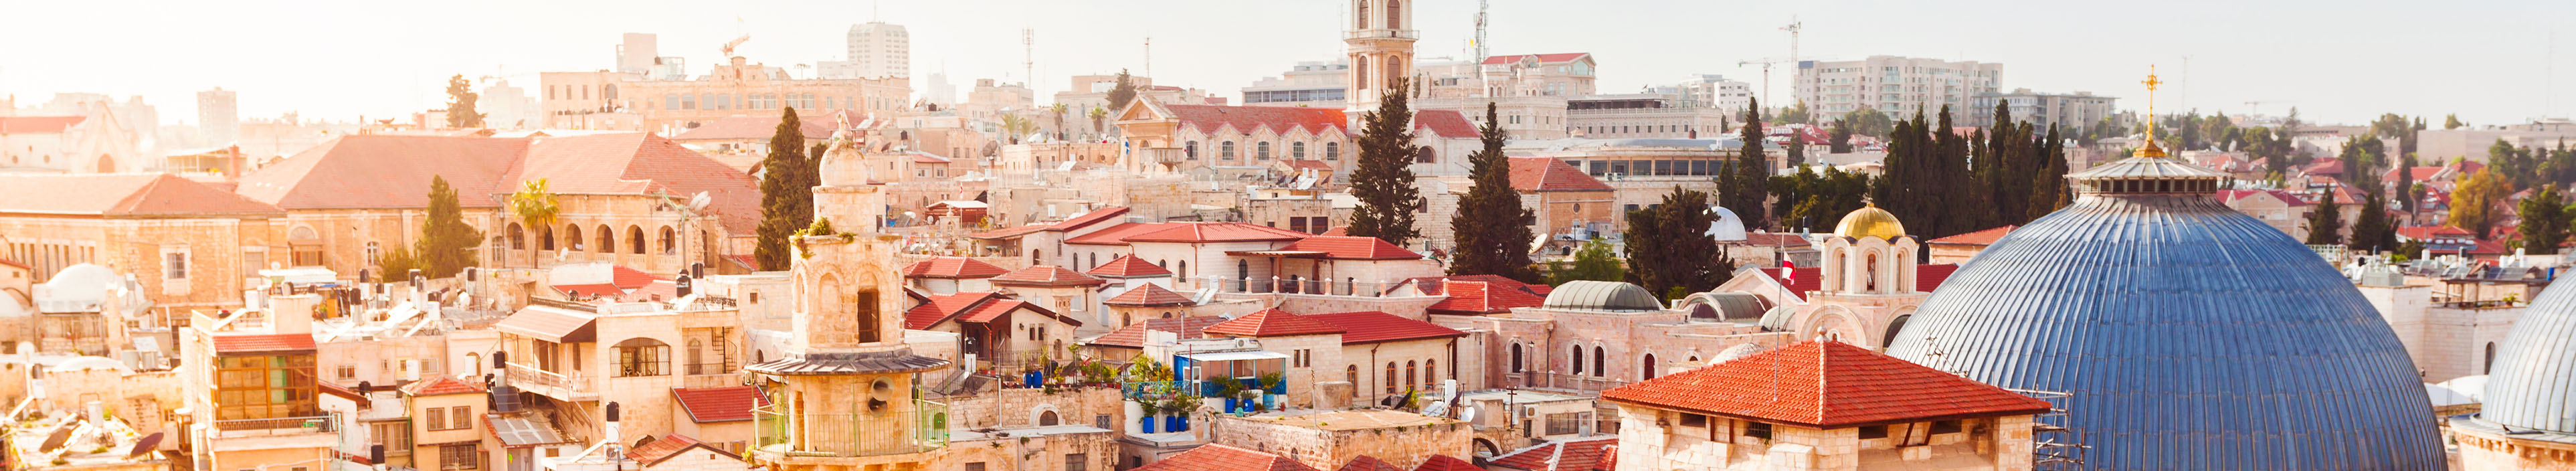 Aussicht über die Dächer der alten Stadt Jerusalems, in Israel.